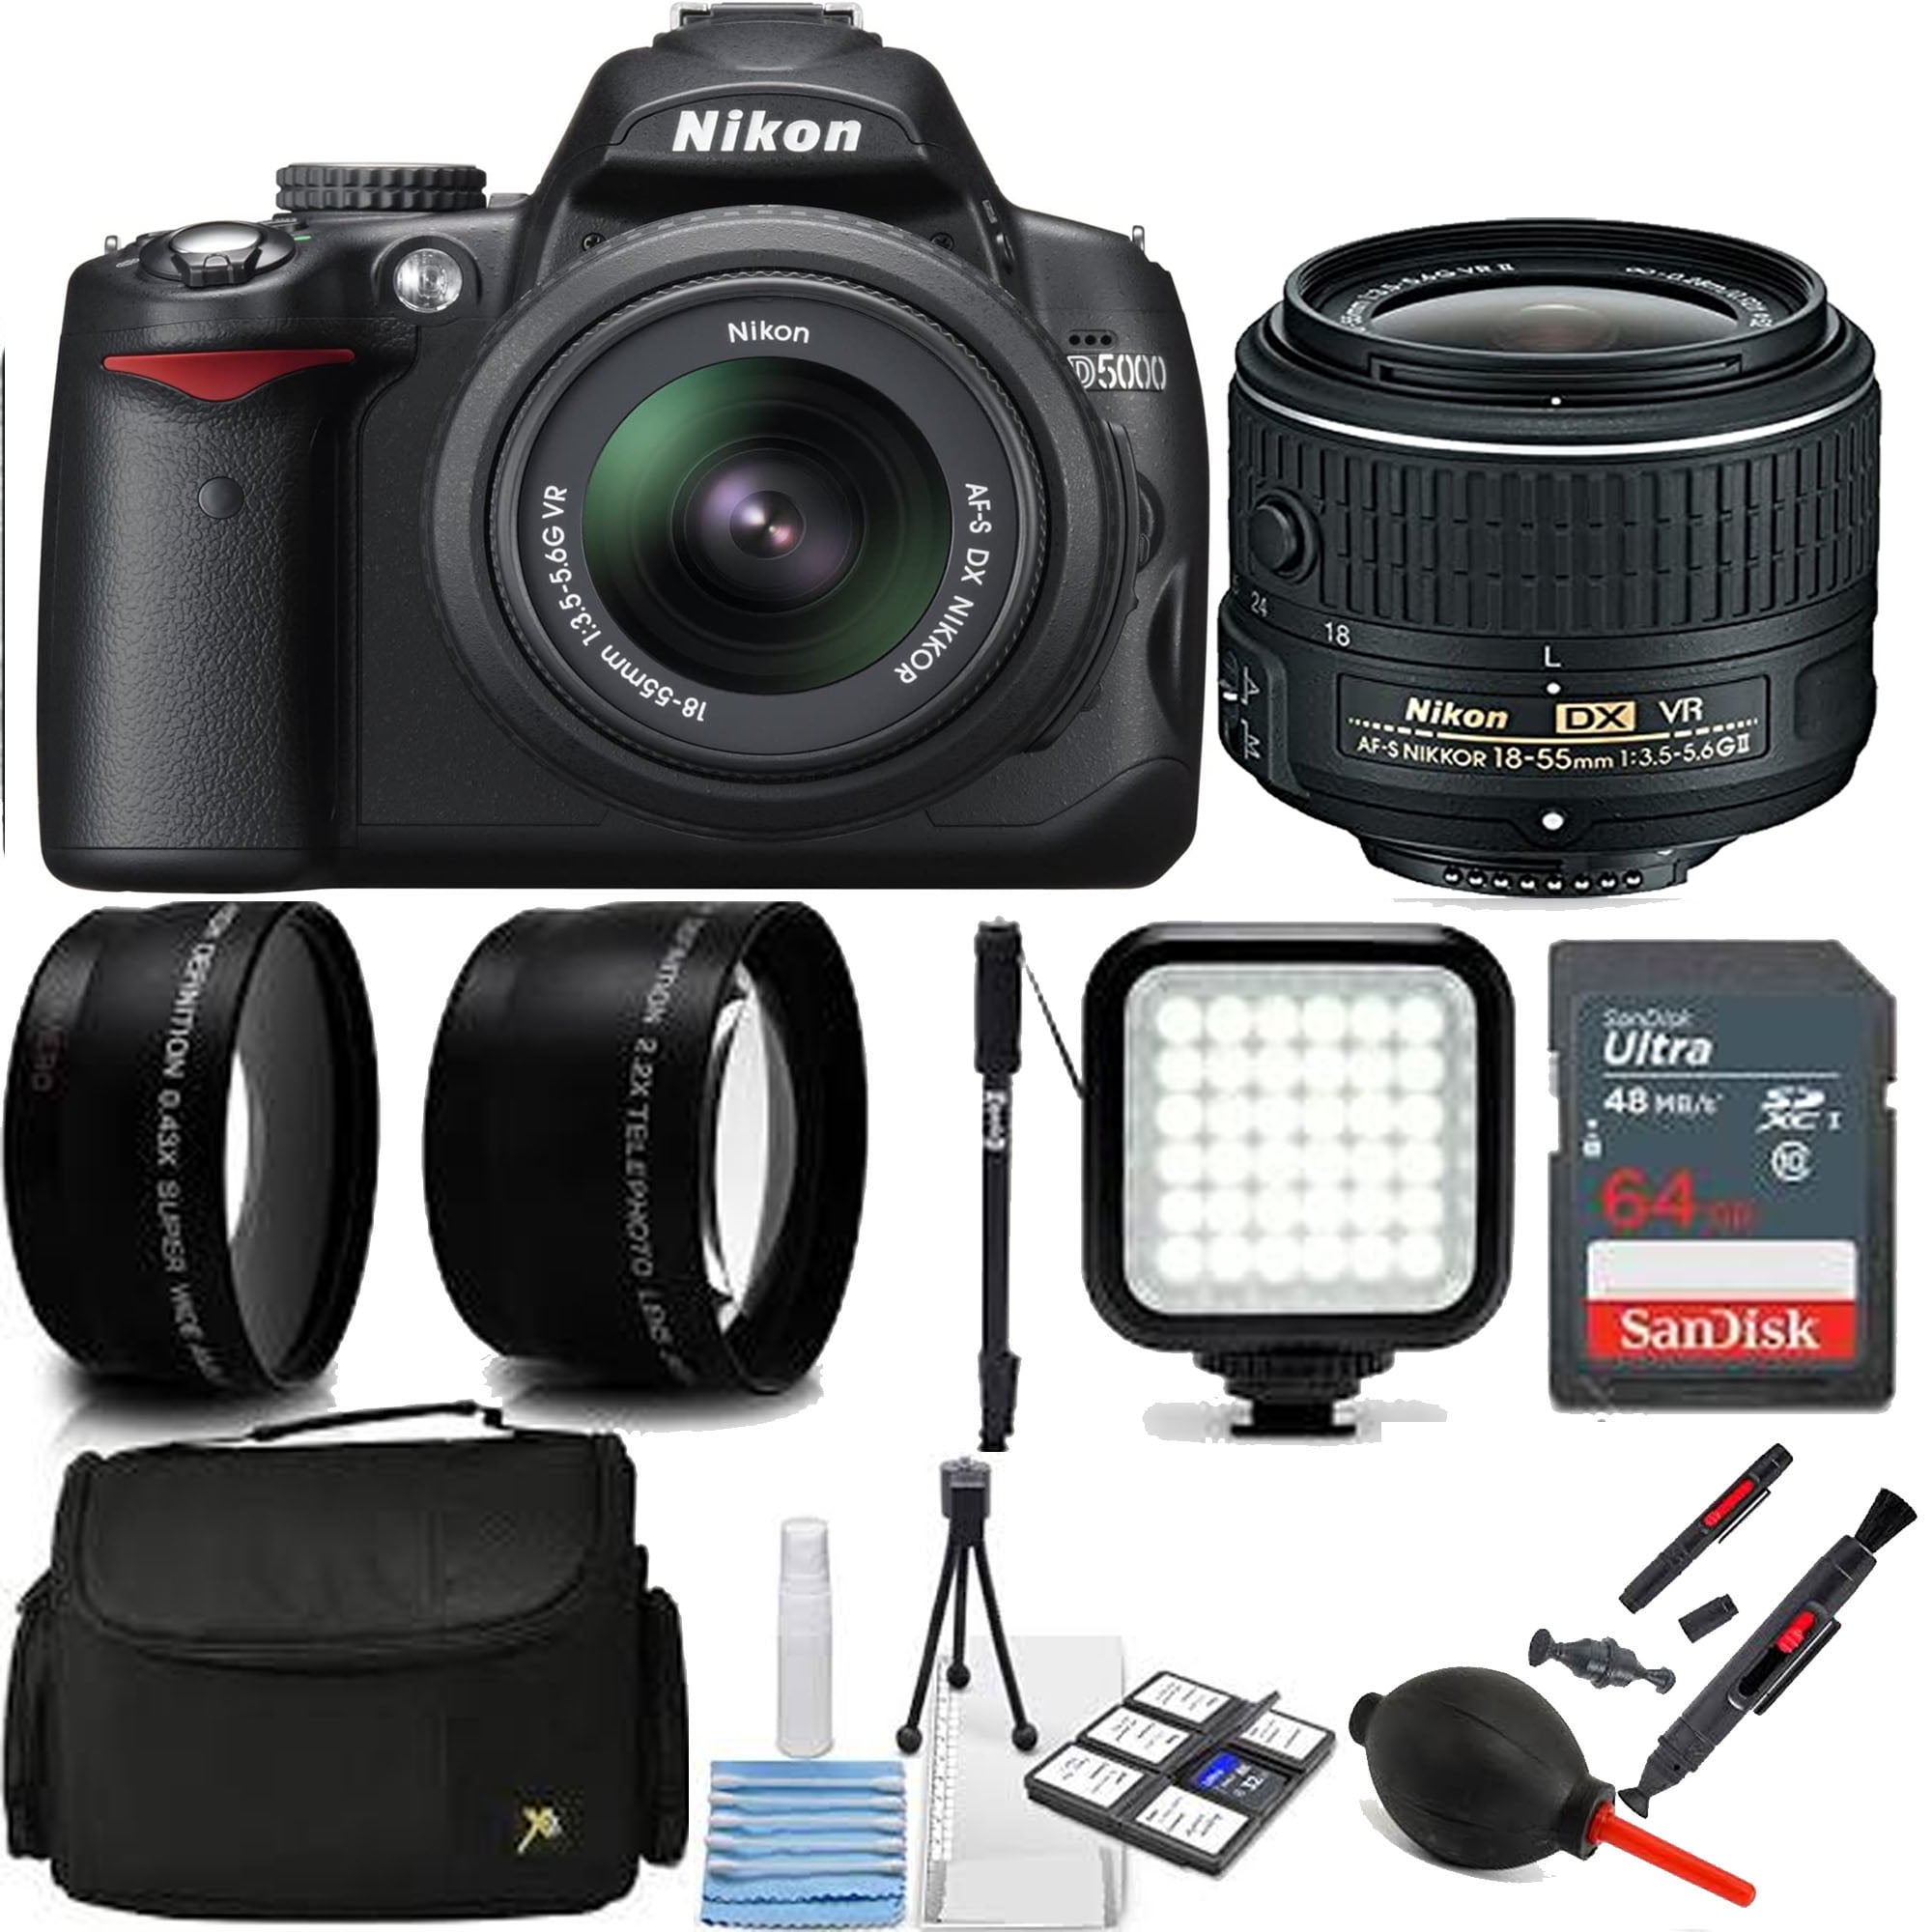 Nikon D3200 24.2 MP CMOS Digital SLR with 18-55mm f/3.5-5.6 Auto Focus-S DX  VR NIKKOR Zoom Lens (Black) (OLD MODEL)